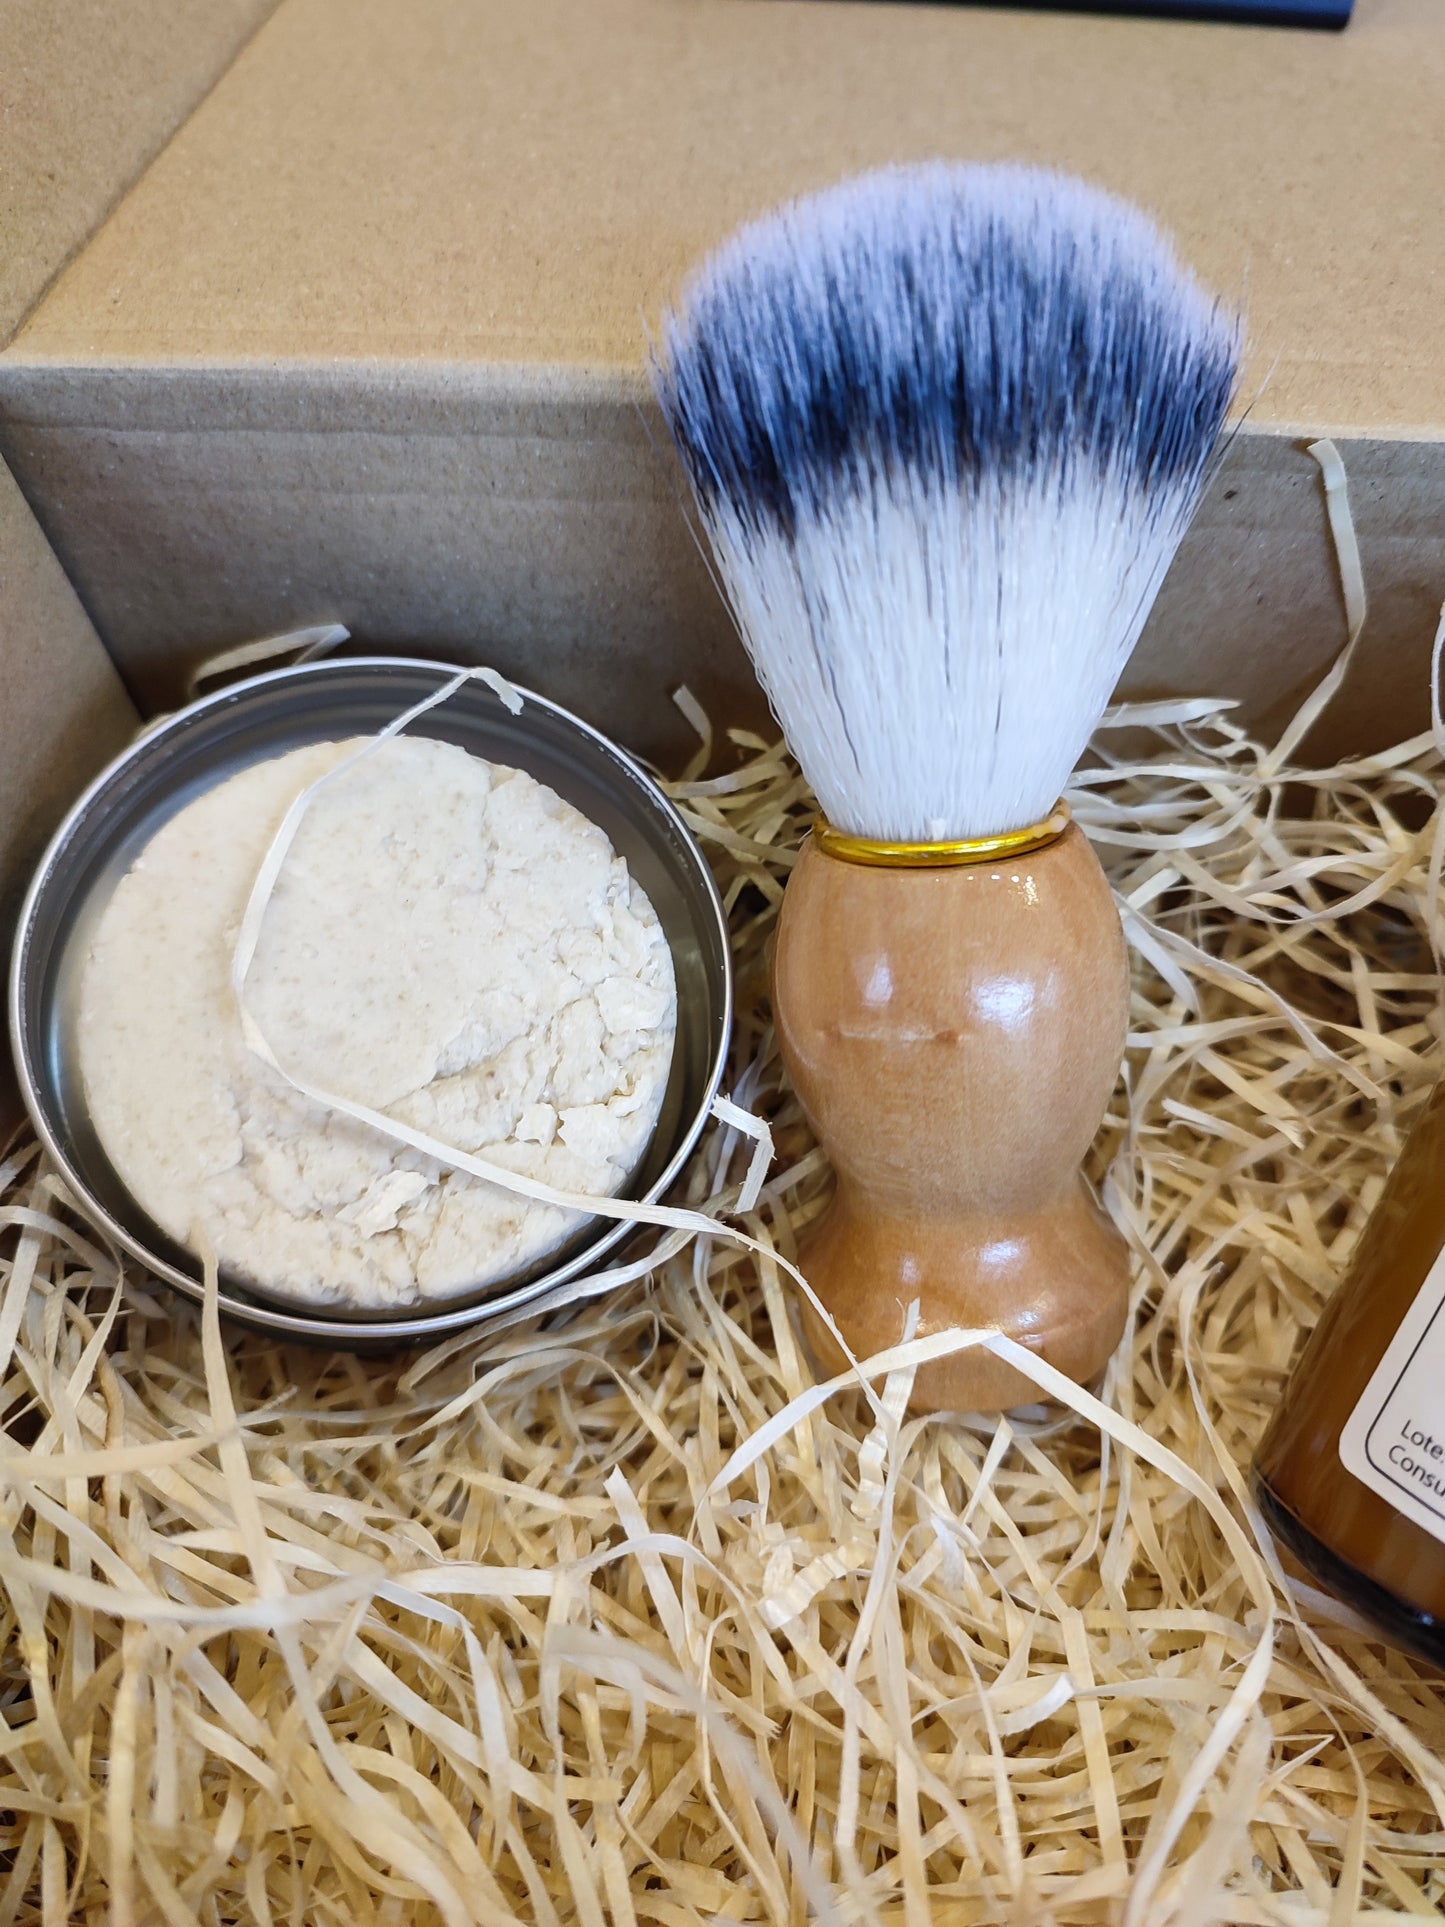 Kit de Afeitar - Jabón Natural + Brocha de pelo delicado + After Shave + Maquina de Afeitar y Recambios, regalo ideal para hombres, regalo papá, regalo día del padre, cuidado facial.